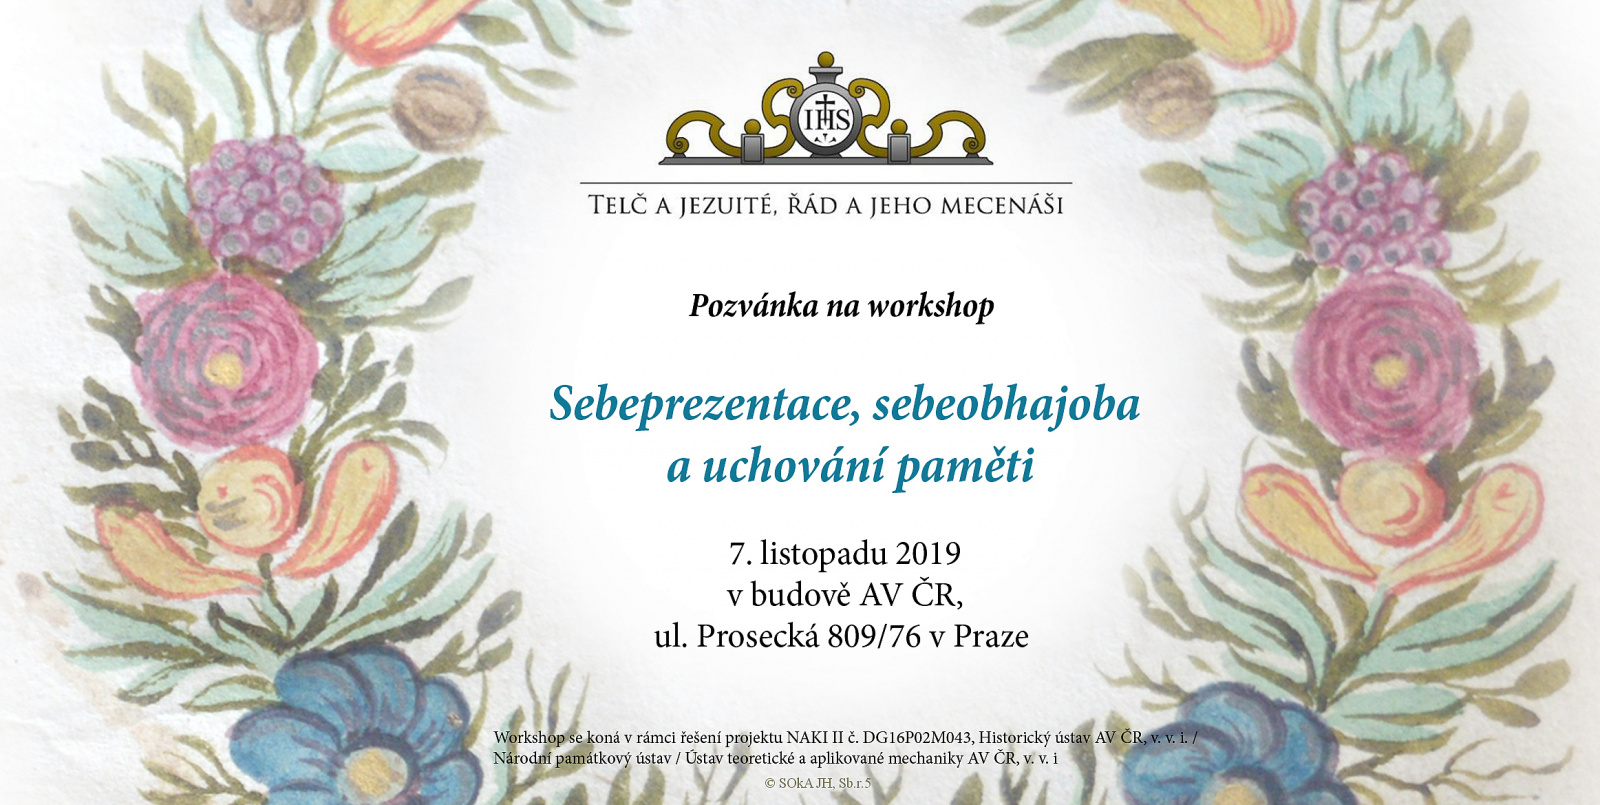 Workshop "Sebeprezentace, sebeobhajoba a uchování paměti"